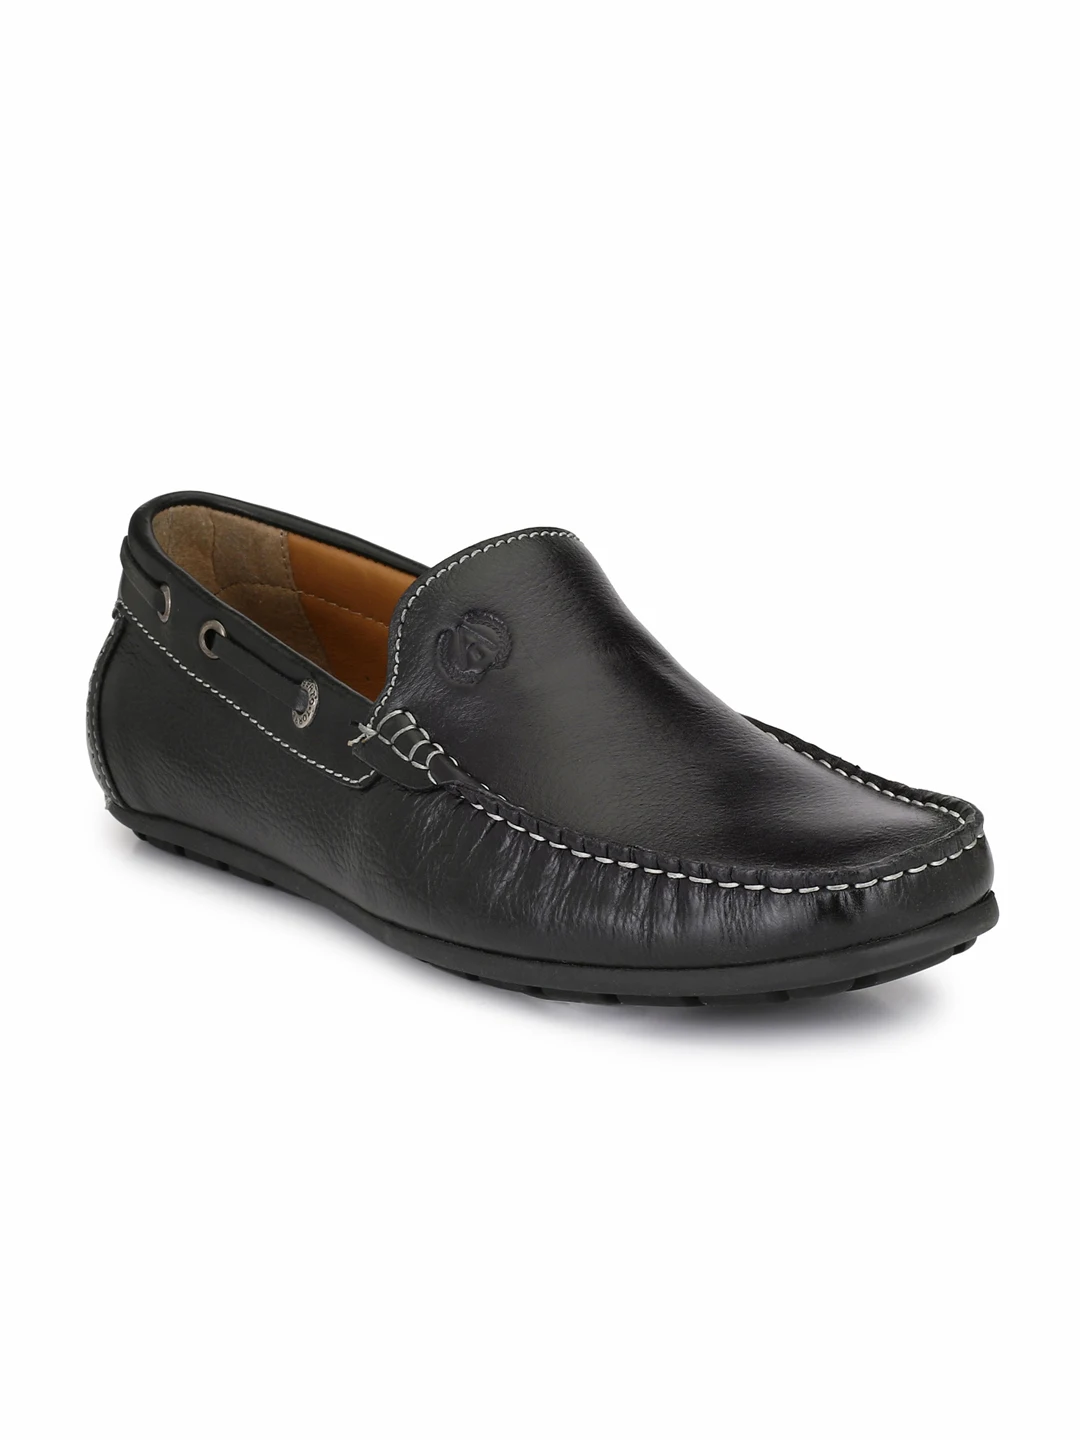 Mocassins en cuir pour hommes, semelle antidérapante, de couleur marron classique, chaussures de bonne qualité, 2019